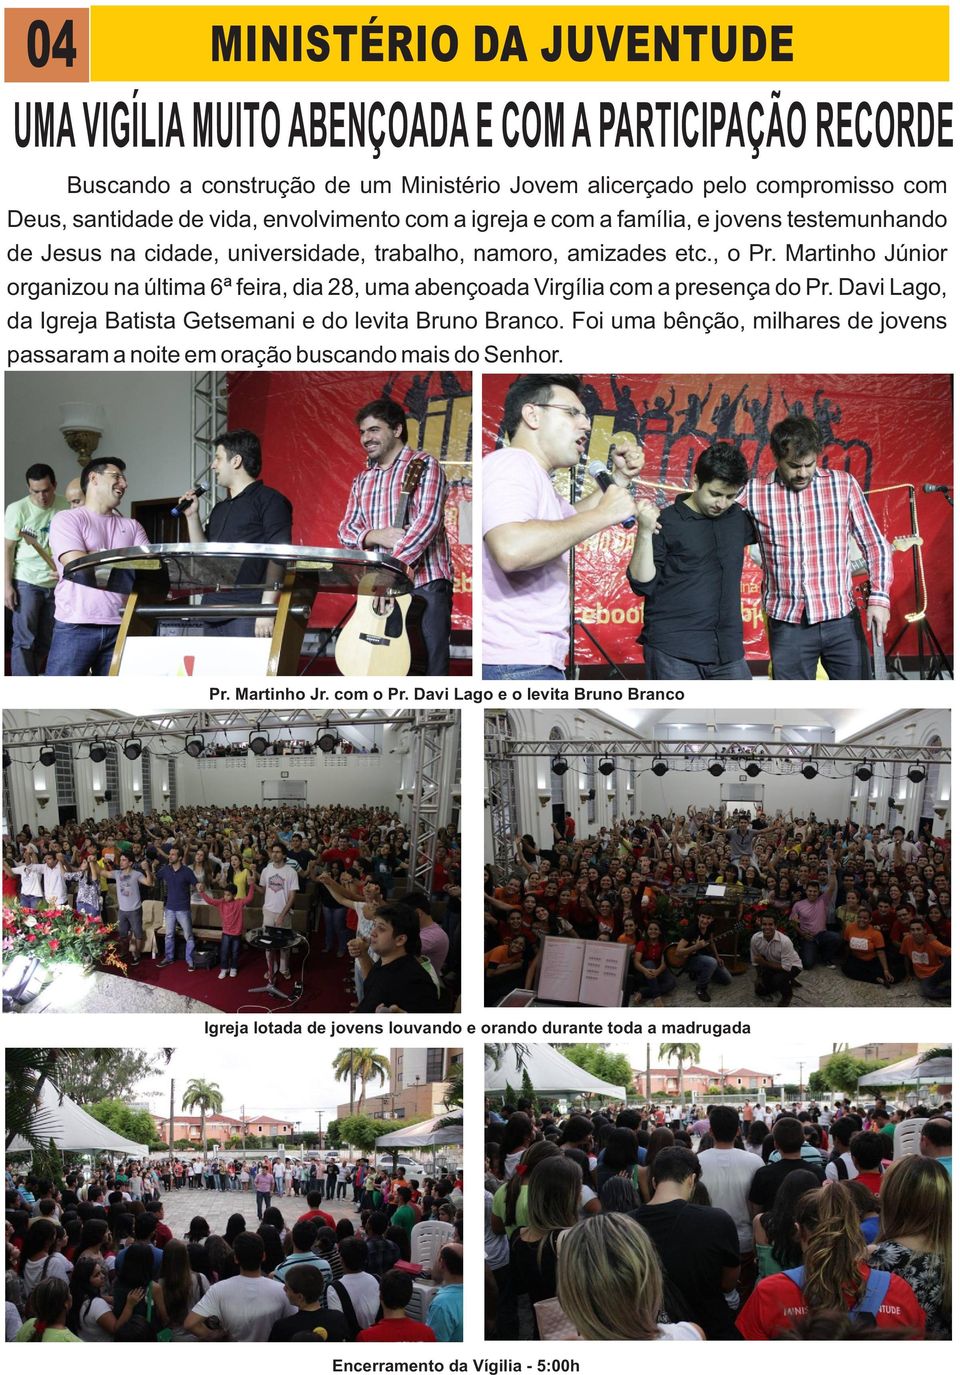 Martinho Júnior organizou na última 6ª feira, dia 28, uma abençoada Virgília com a presença do Pr. Davi Lago, da Igreja Batista Getsemani e do levita Bruno Branco.